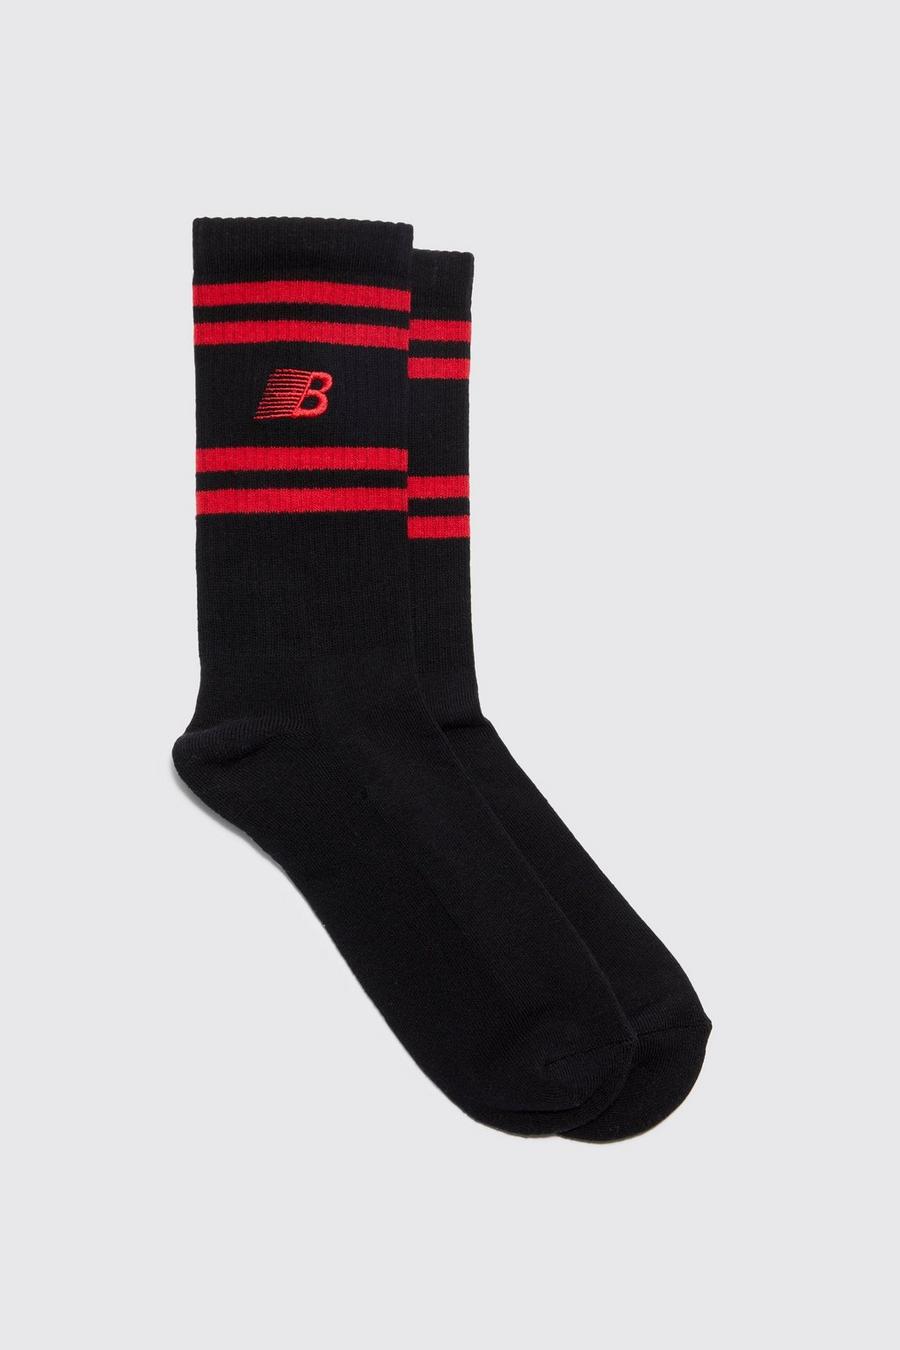 Black noir Embroidered B Stripe Socks